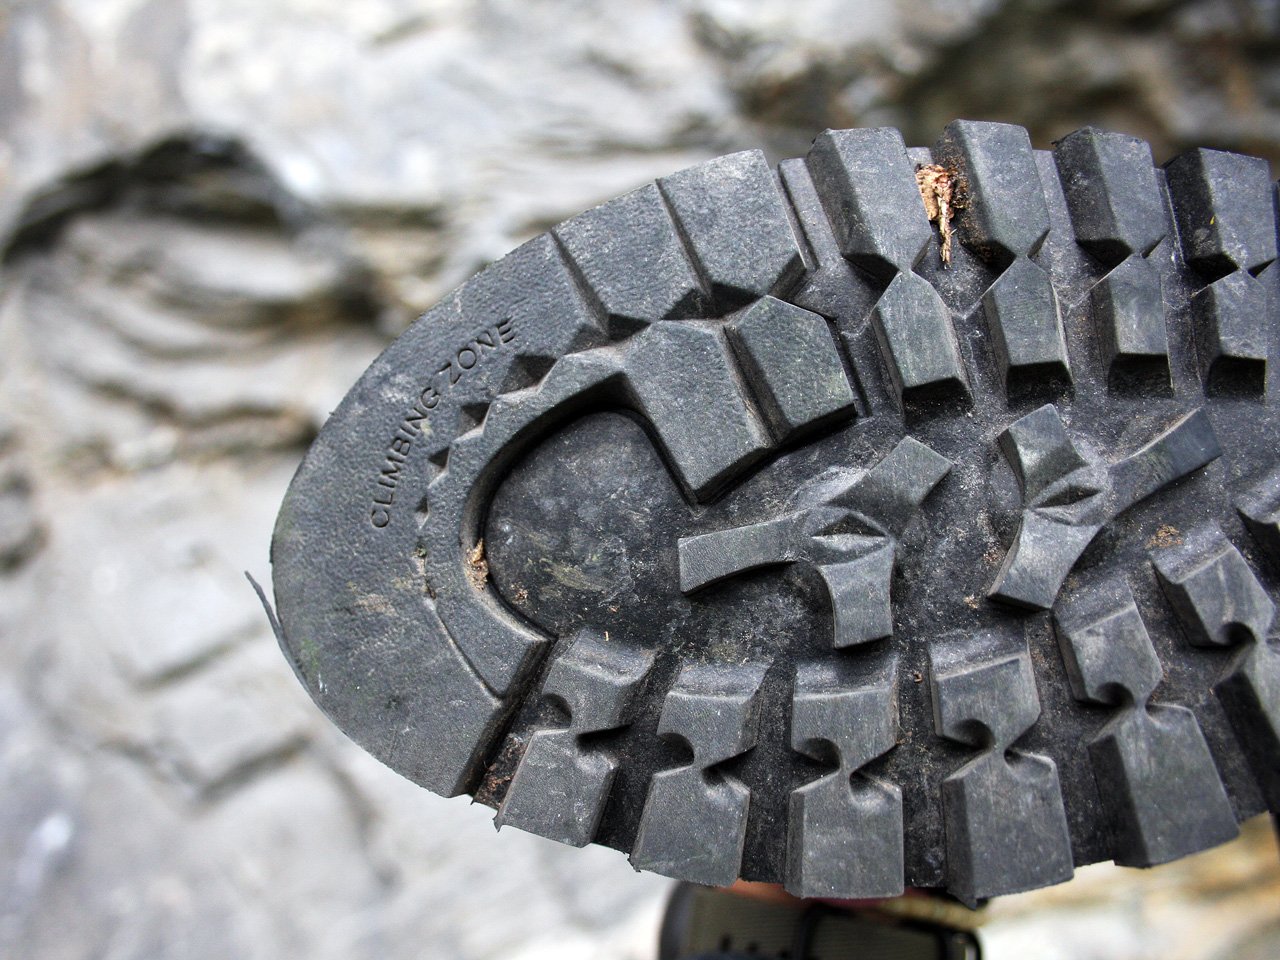 Testbericht – Millet Trident Guide GTX: Die Vibram Sohle des Schuhs bietet einen guten Grip auf allen Untergründen. Für das Antreten oder das Klettern im felsigen Gelände besitzt die Sohle im vorderen Zehenbereich eine Climbingzone. (©airFreshing.com)